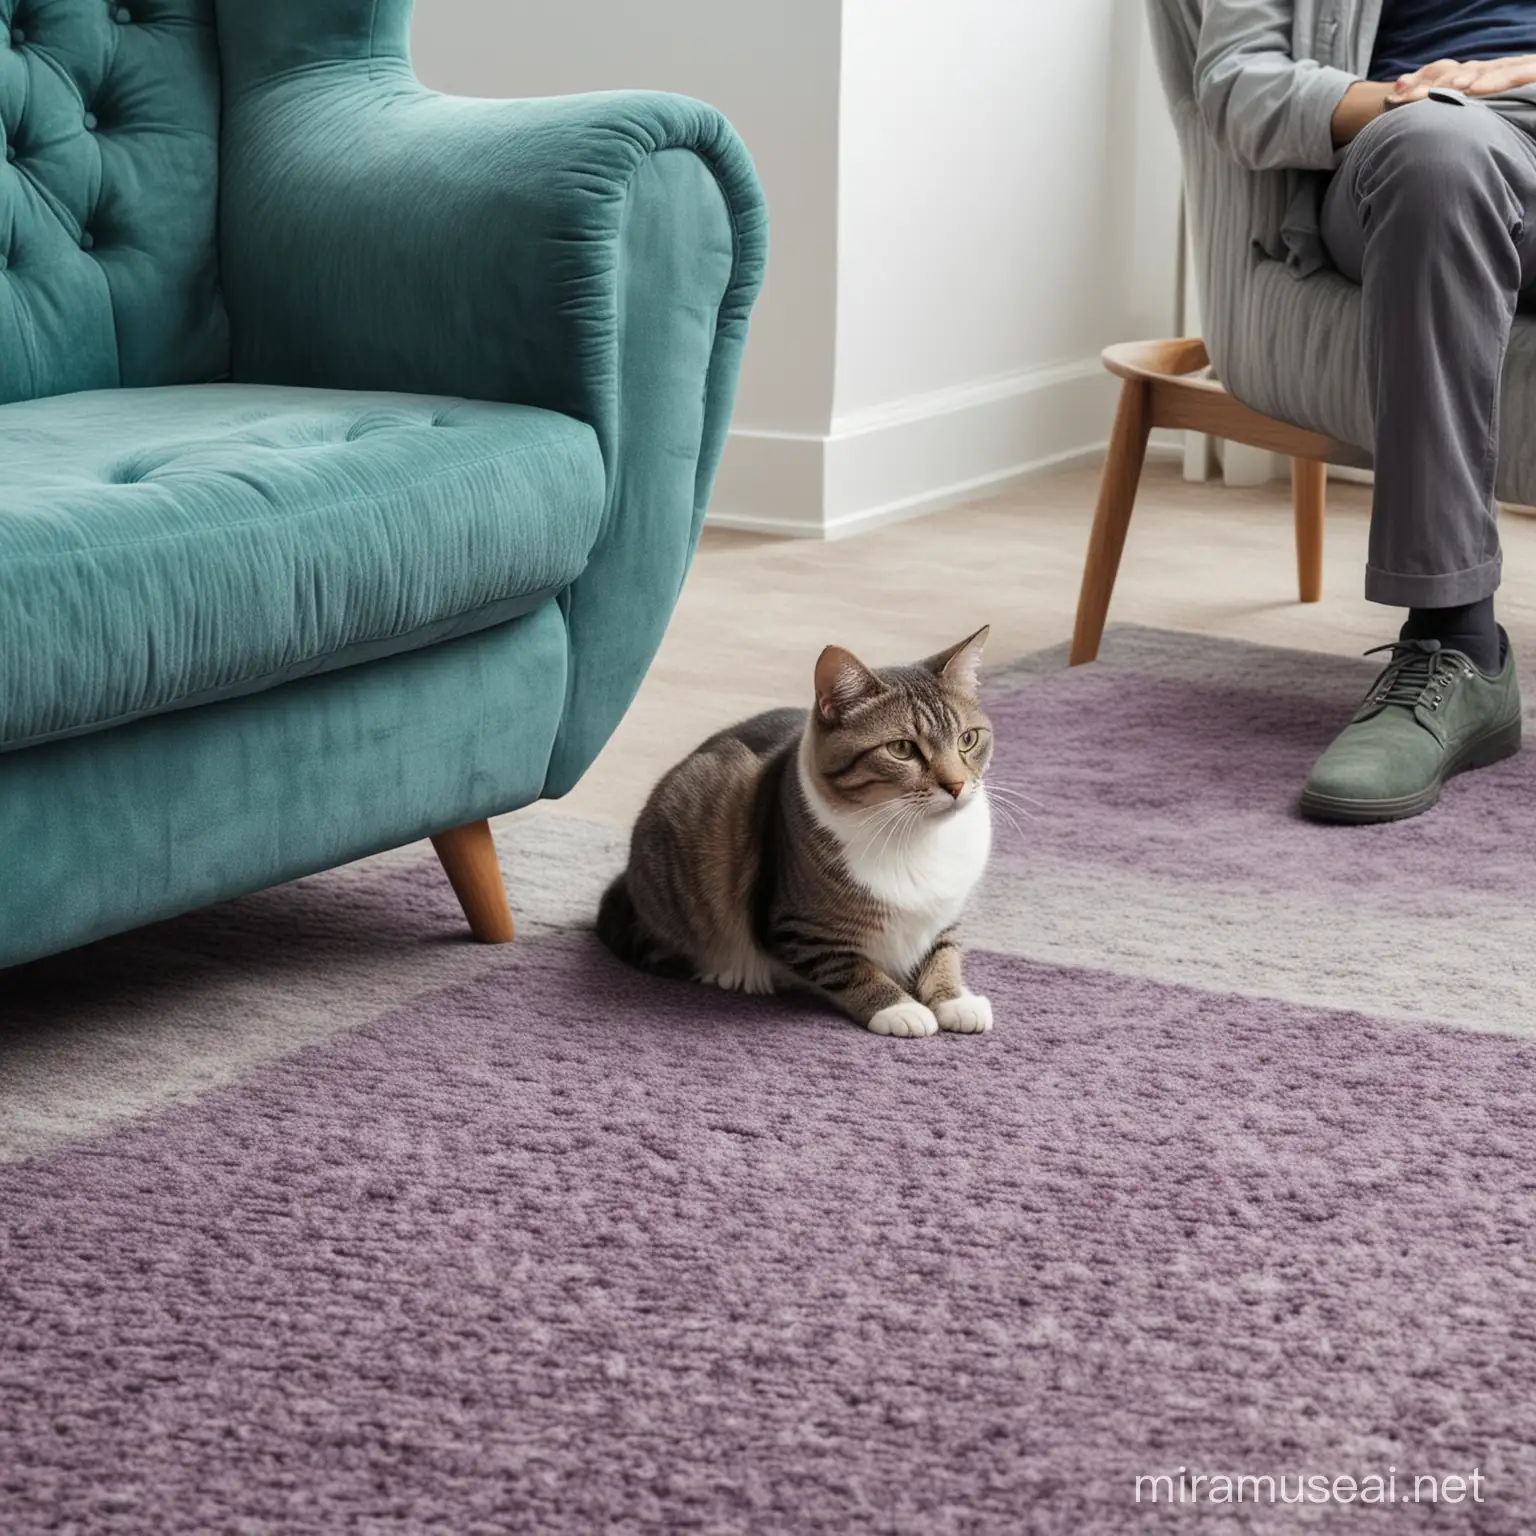 Кот сидит на ковре и смотрит на мужчину, который сидит в кресле. Зеленые, синие, фиолетовые тона